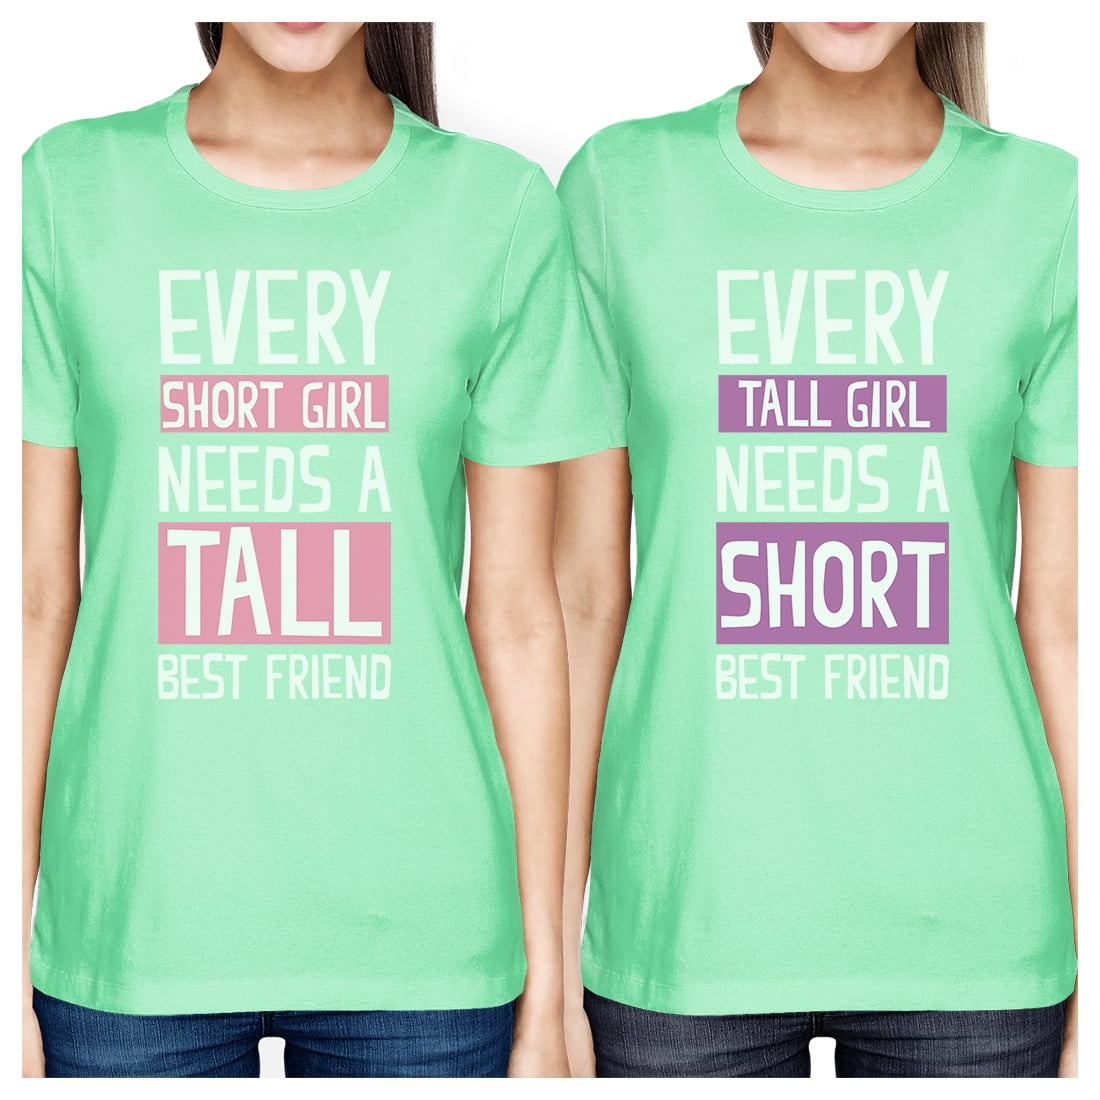 Short my friend. Friend short. Tall short friendly. Футболка girl never can first. BFF пушистые друзья.